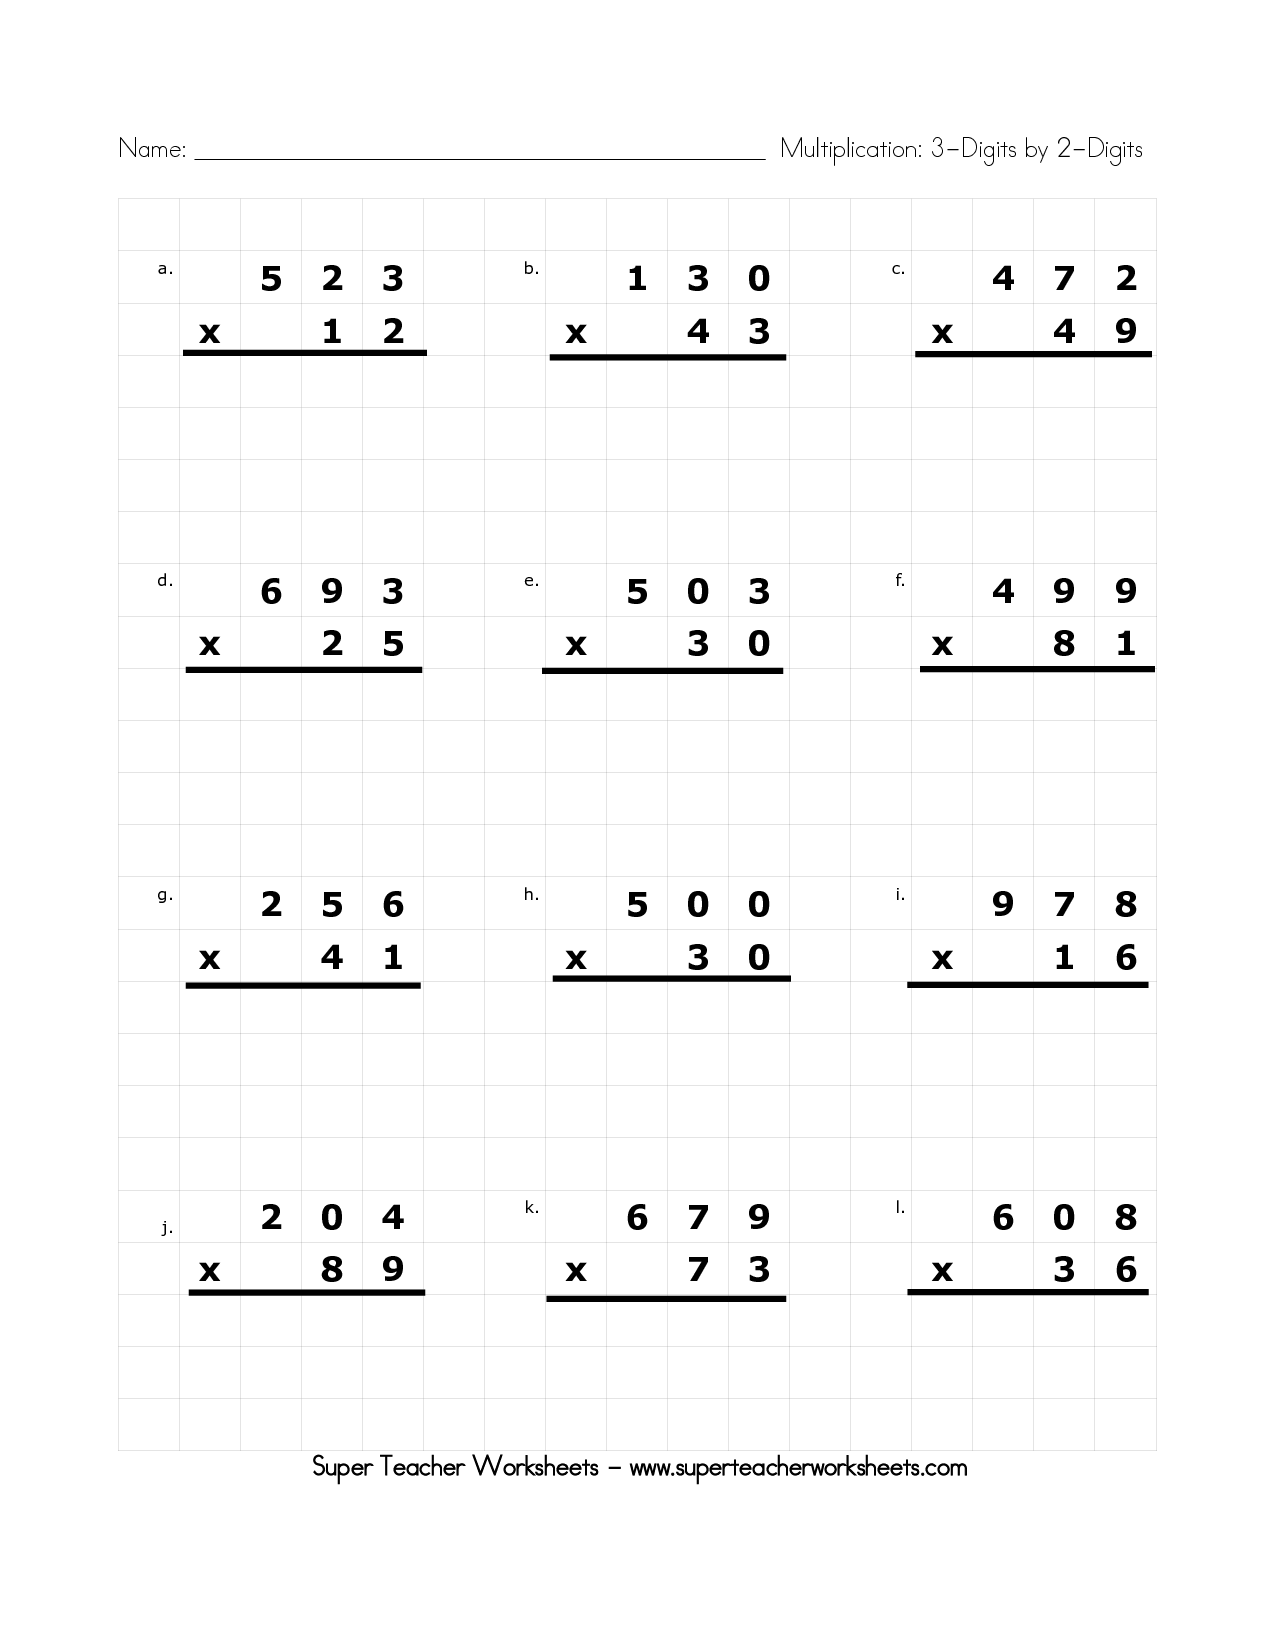  Super Teacher Worksheets Multiplication 3rd Grade 10 Best Images Of super teacher worksheets 